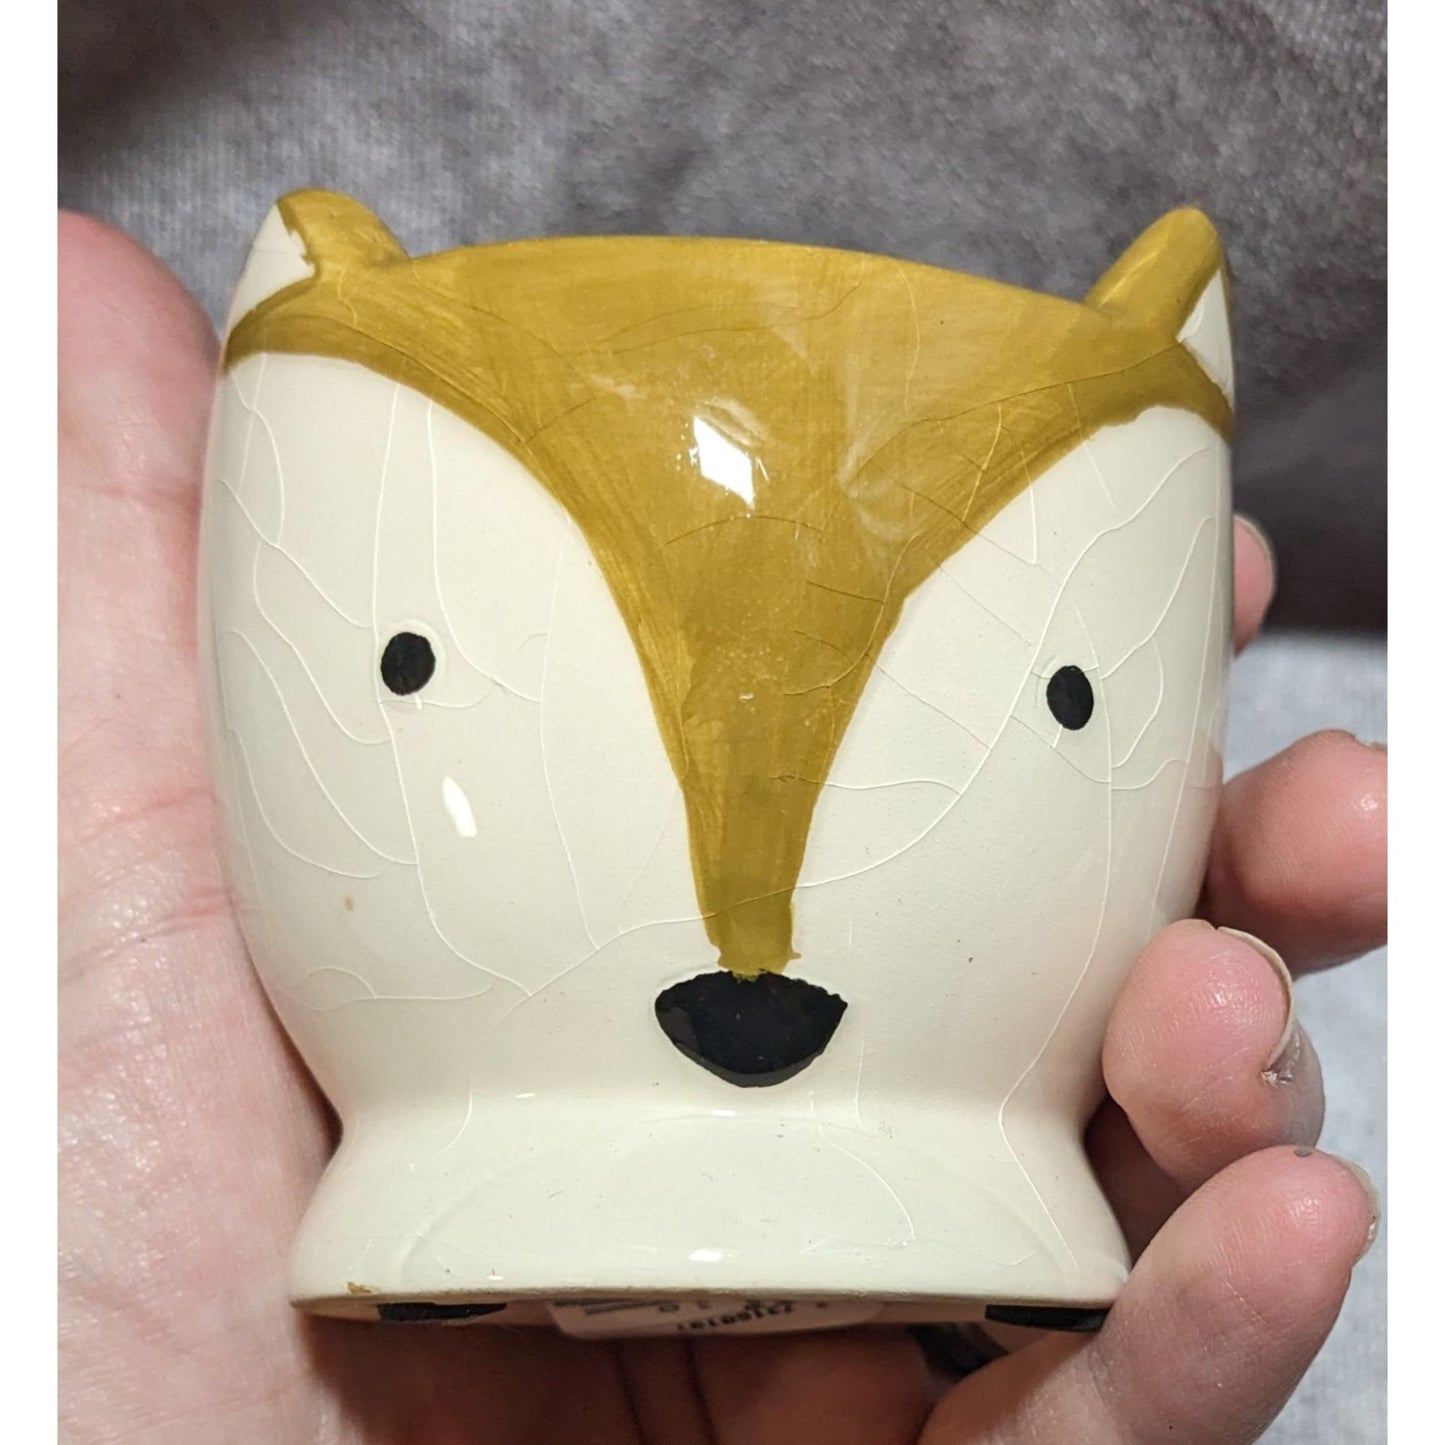 Ceramic Fox Cup